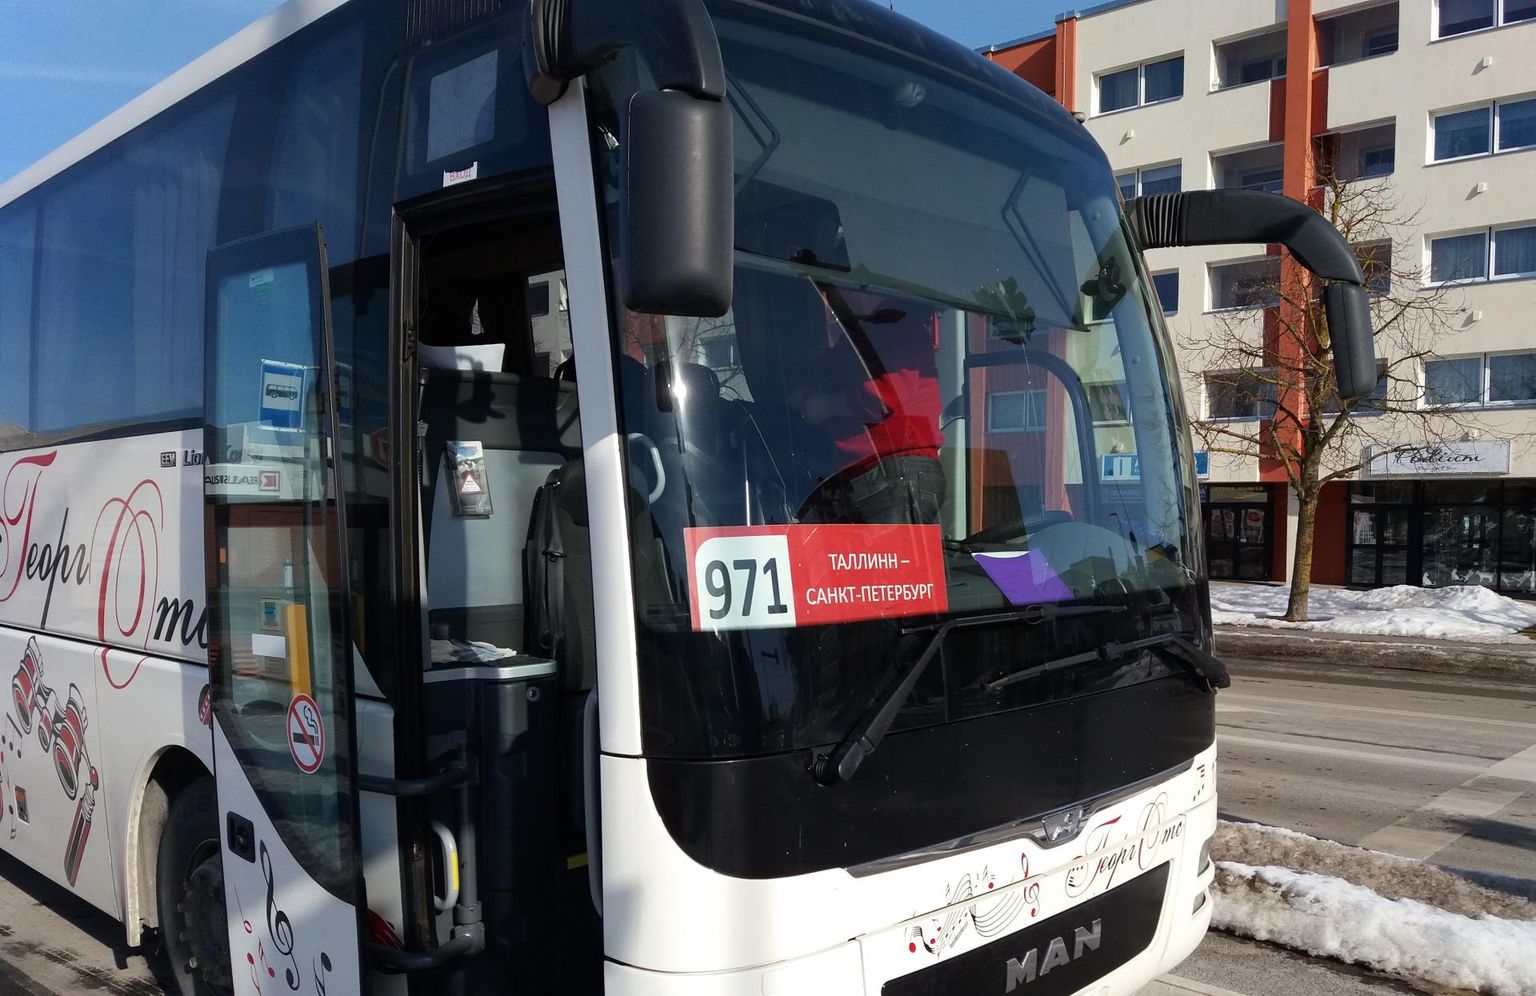 Vene bussifirma Tallinna-Peterburi liini buss Rakveres.